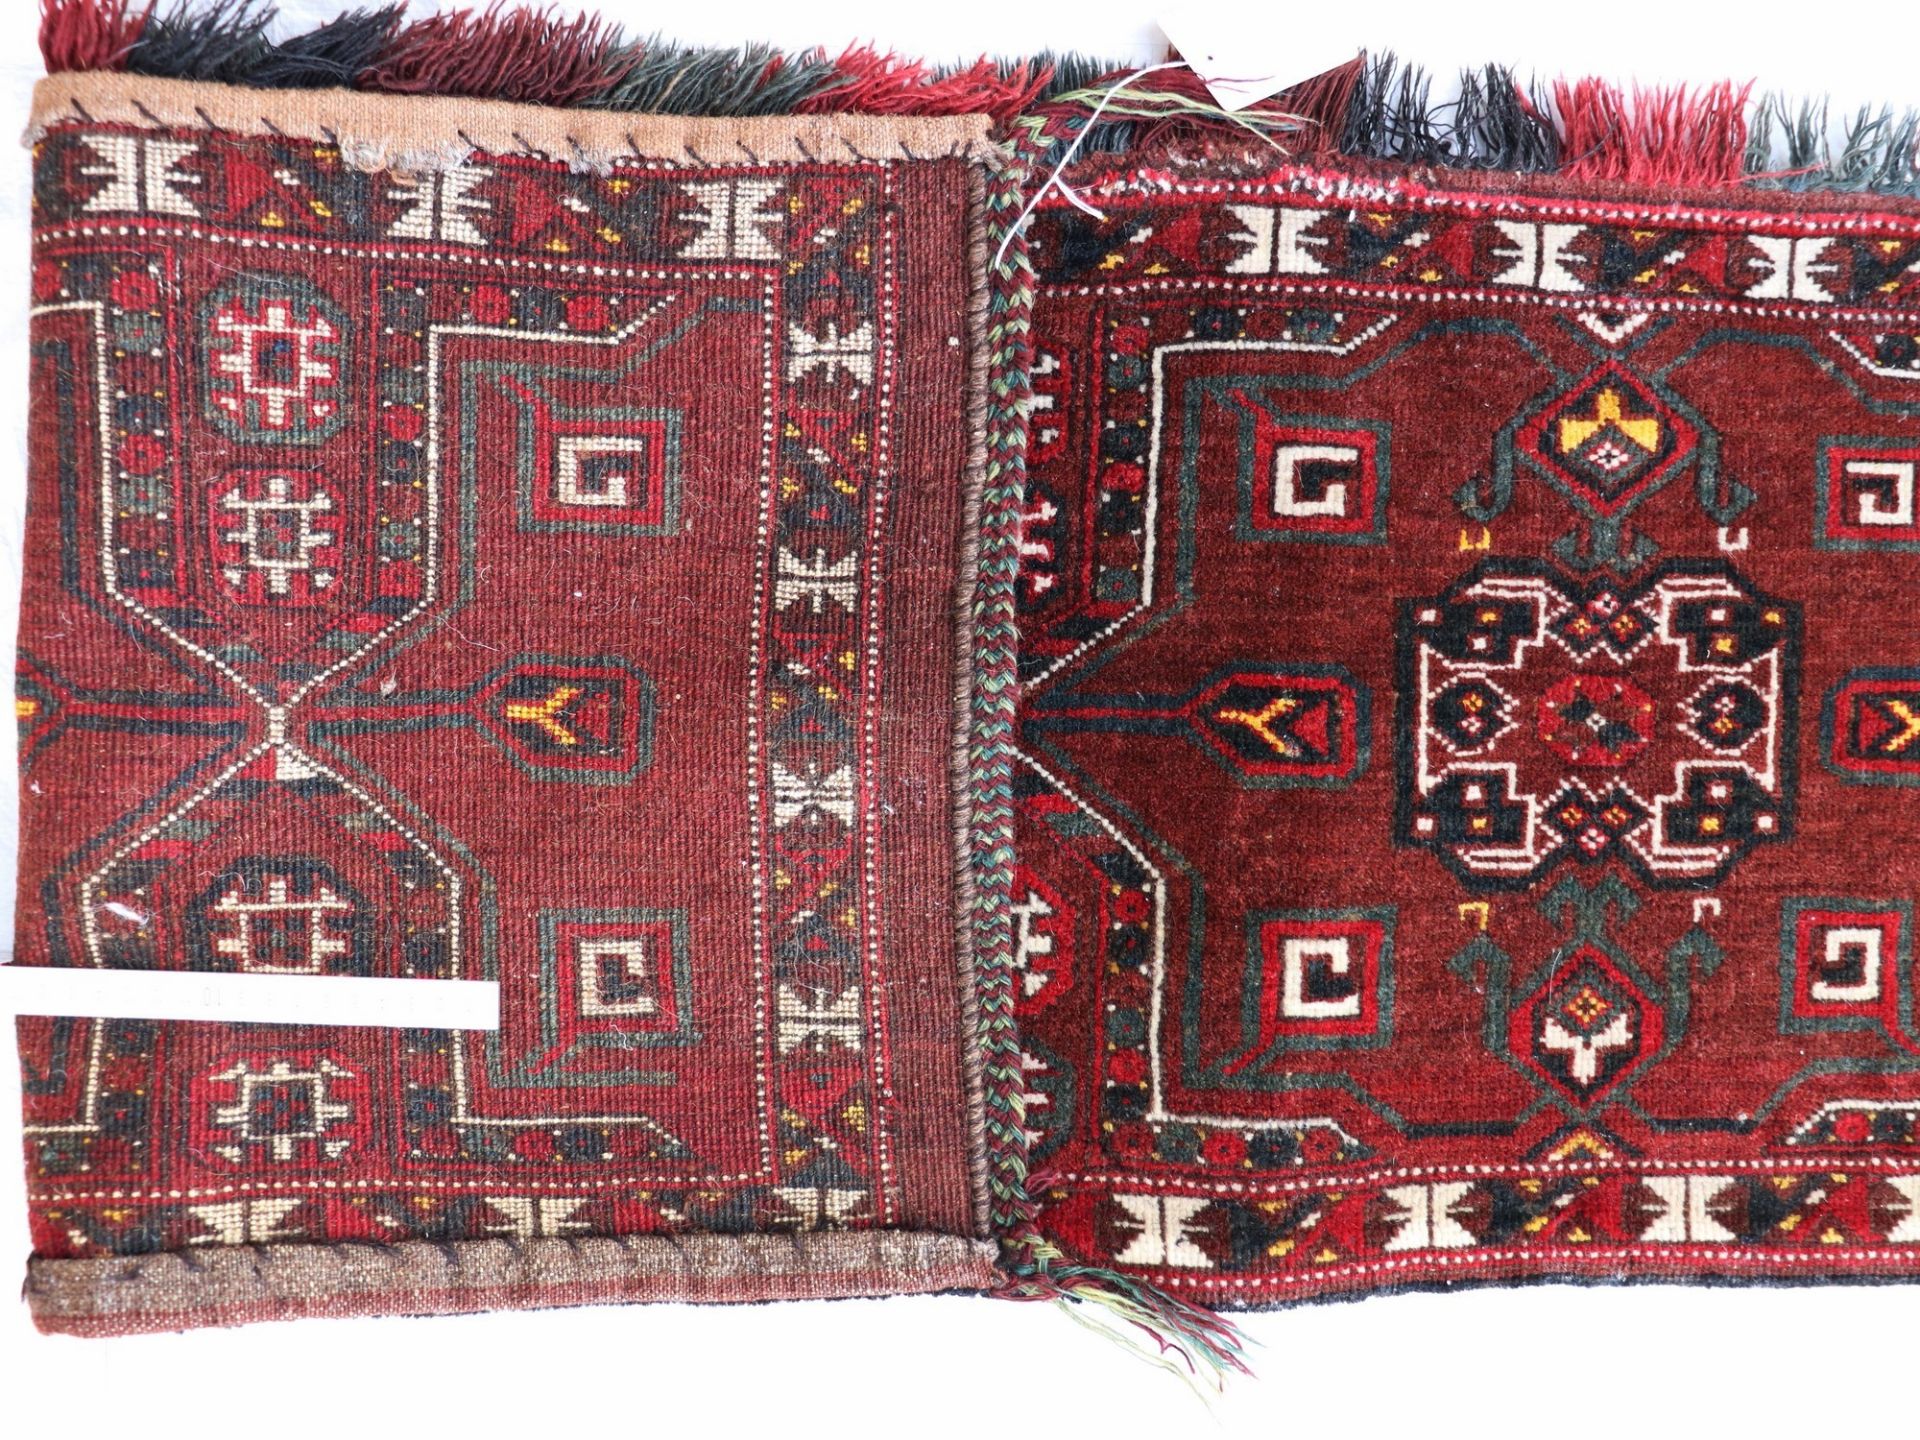 Satteltaschenfront Turkmenistan, Wolle, umgearbeitet, fortlaufendes Medaillonmotiv, rotgrundig, - Bild 7 aus 7